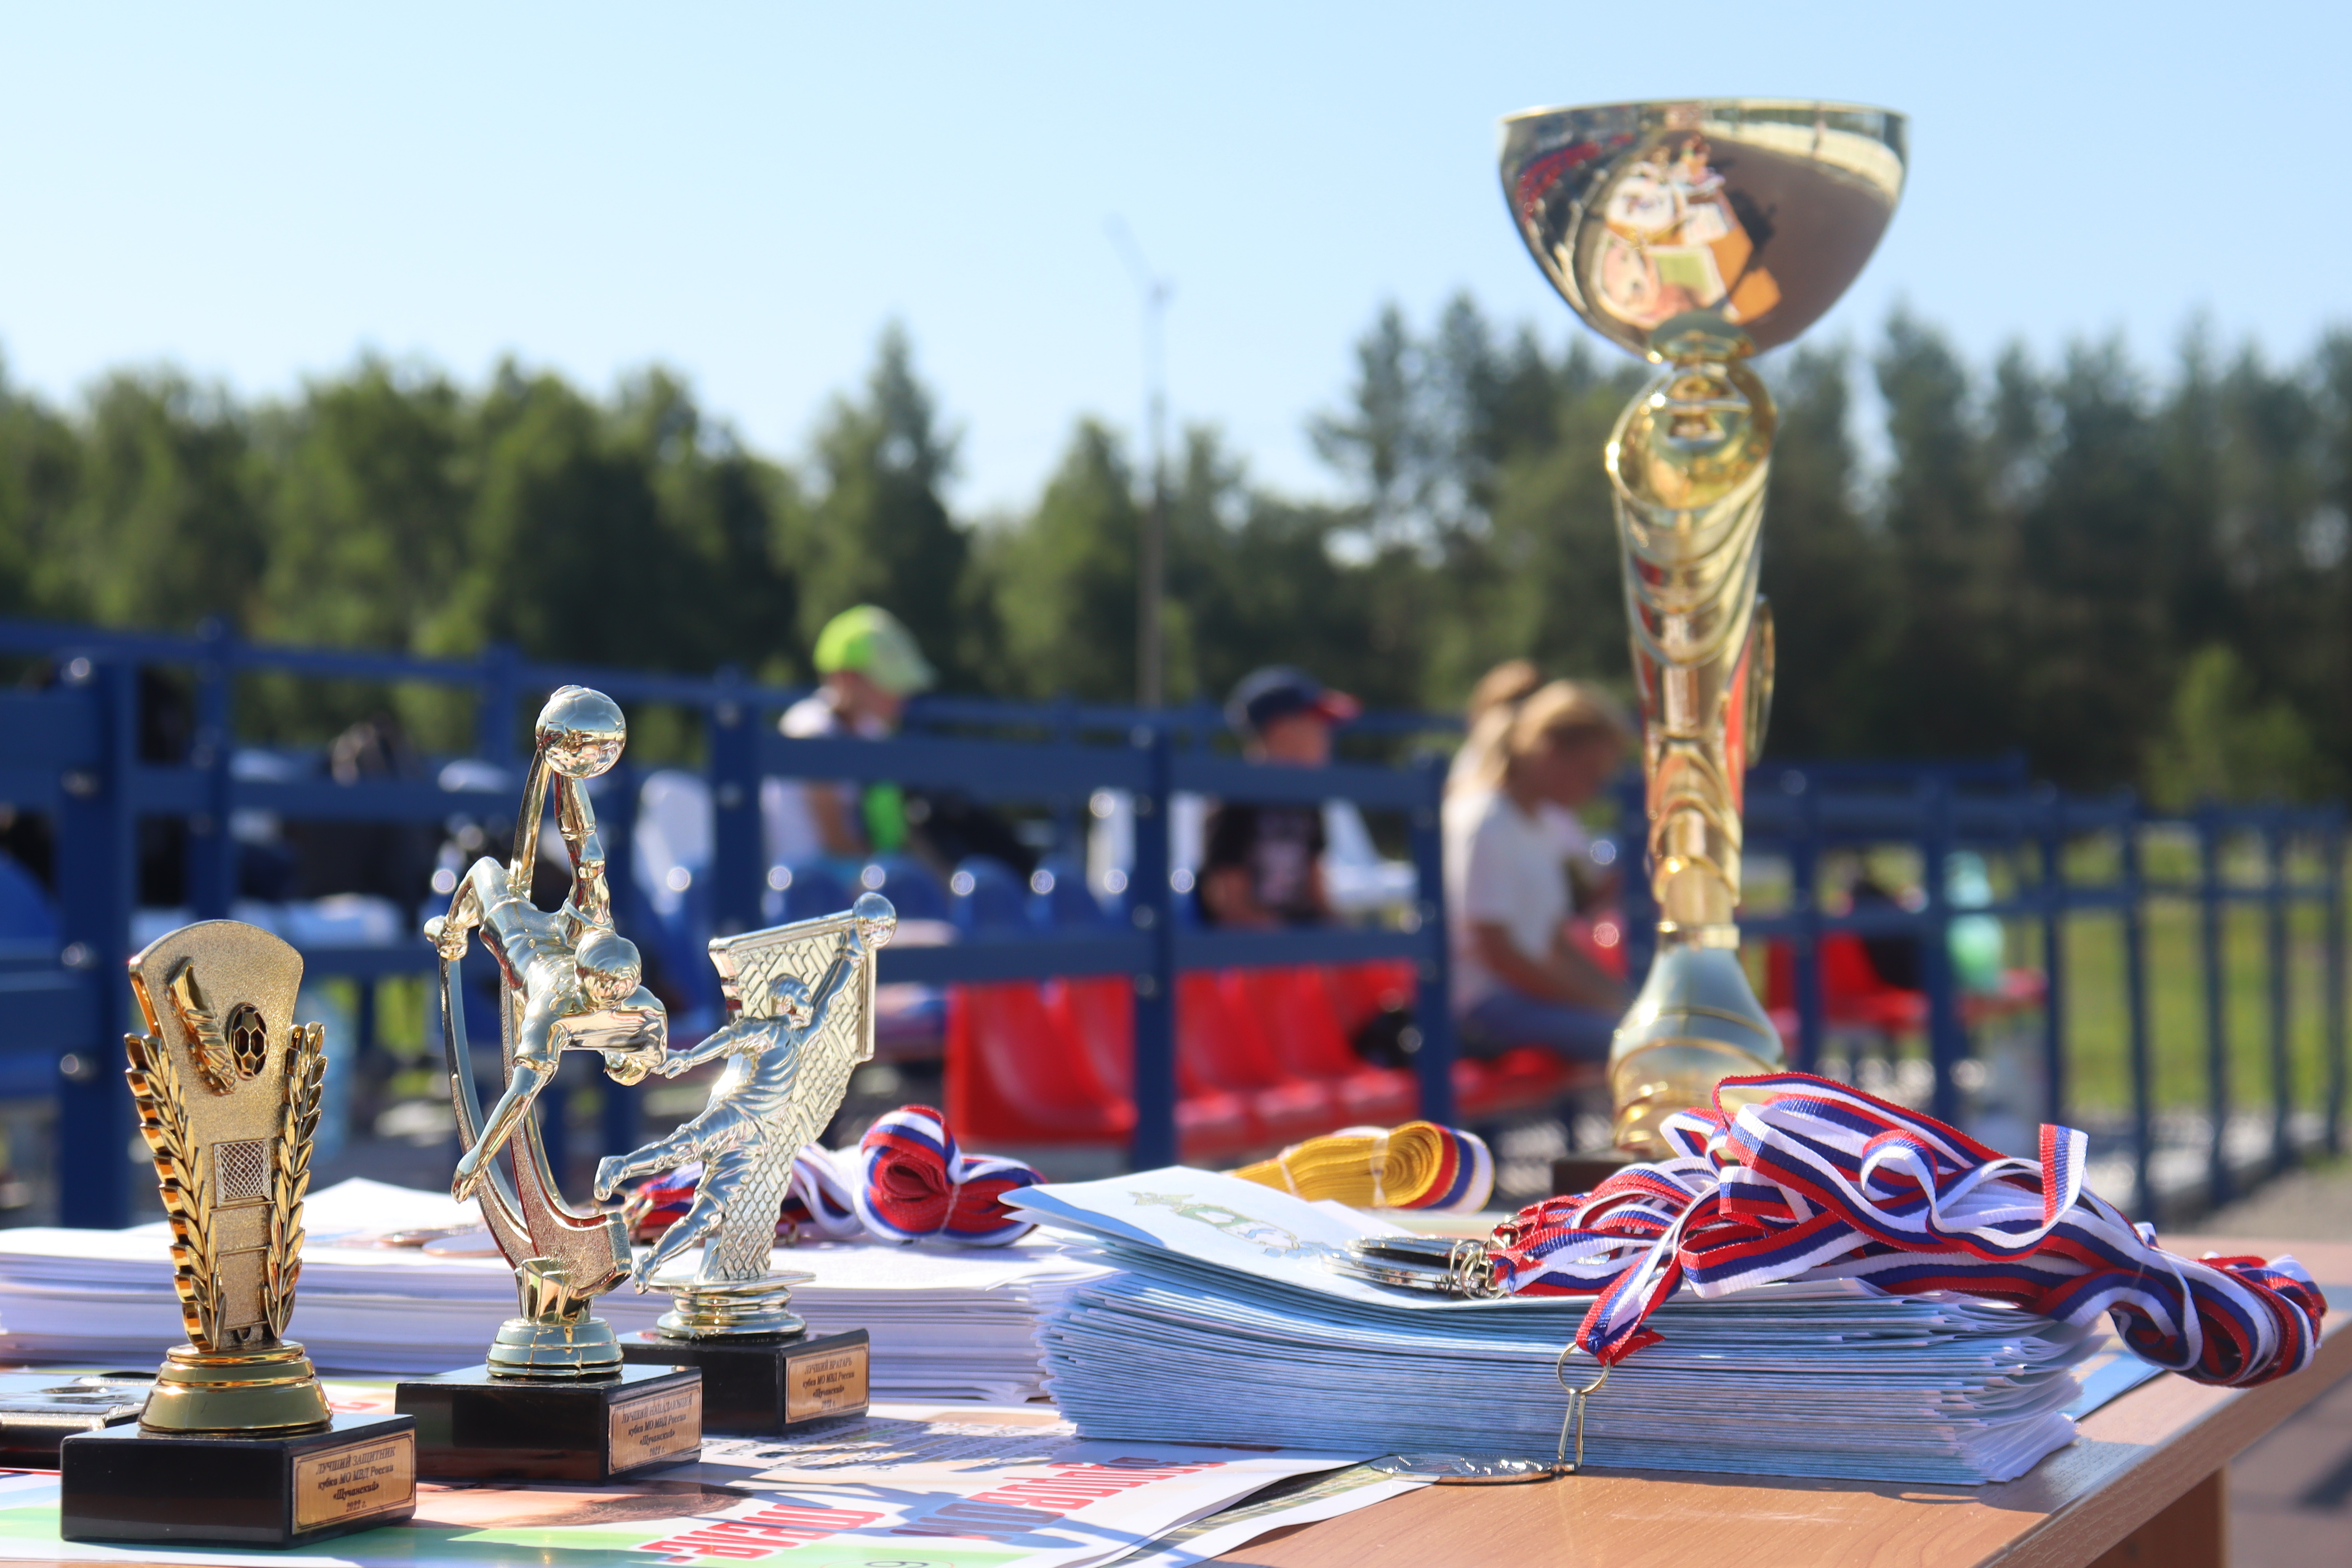 8 июля 2022 года на новом, современном футбольном поле на территории Комплекса отдыха и развития с. Чумляк (КЭМП) впервые был организован и проведен турнир по мини-футболу.